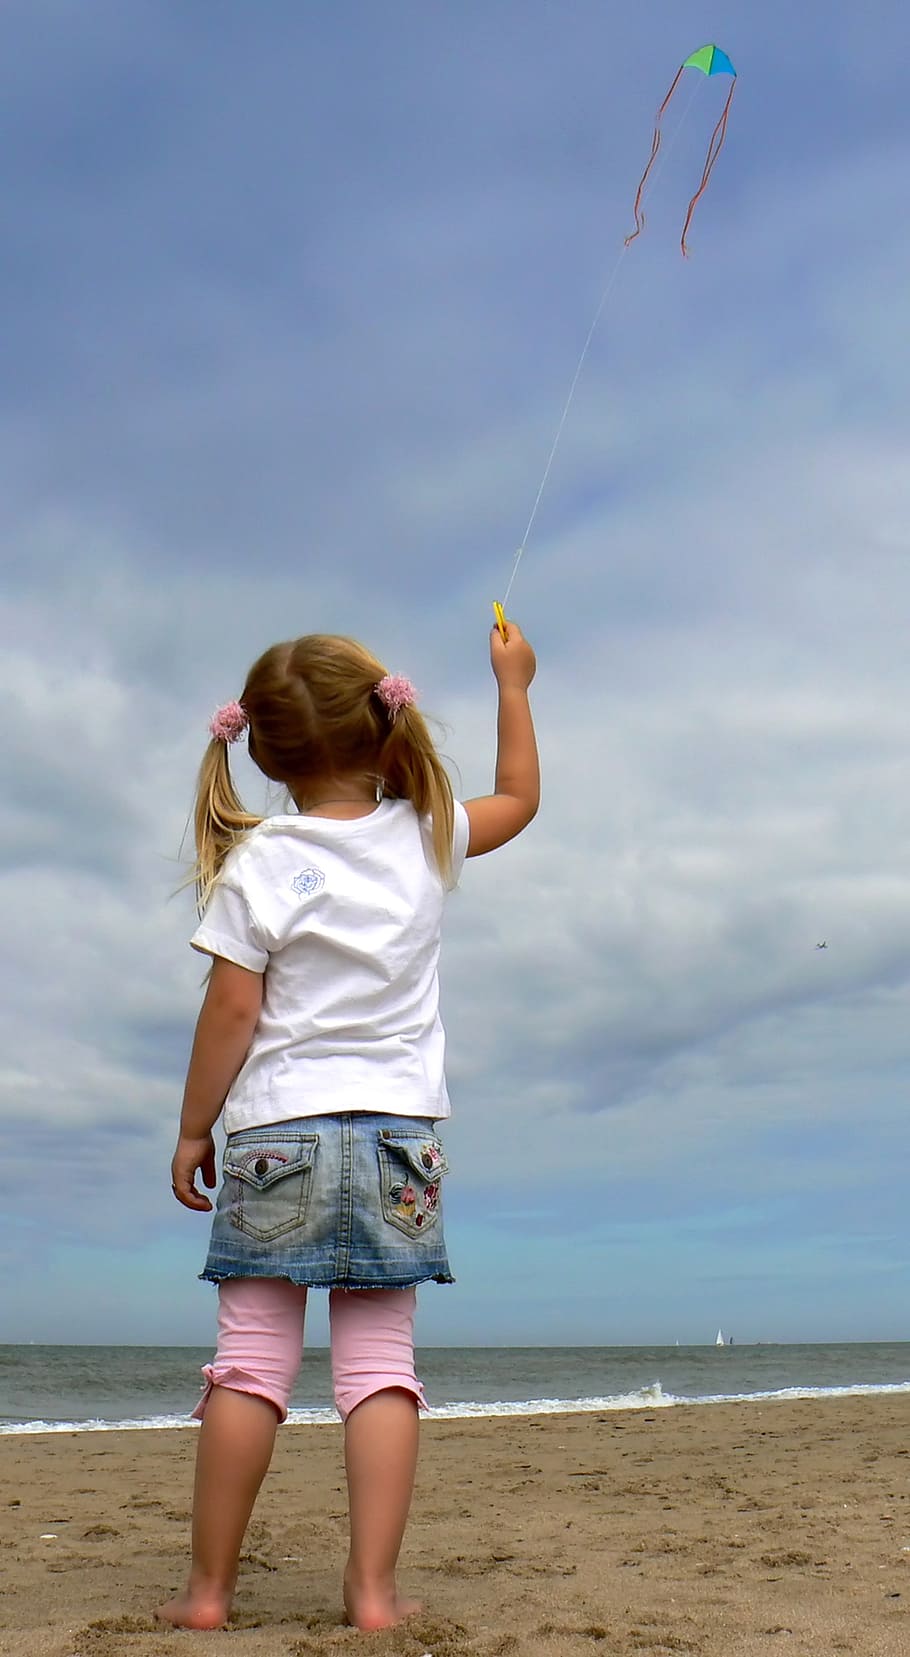 girl, holding, string, kite, flying, white, cloudy, sky, seashore, daytime